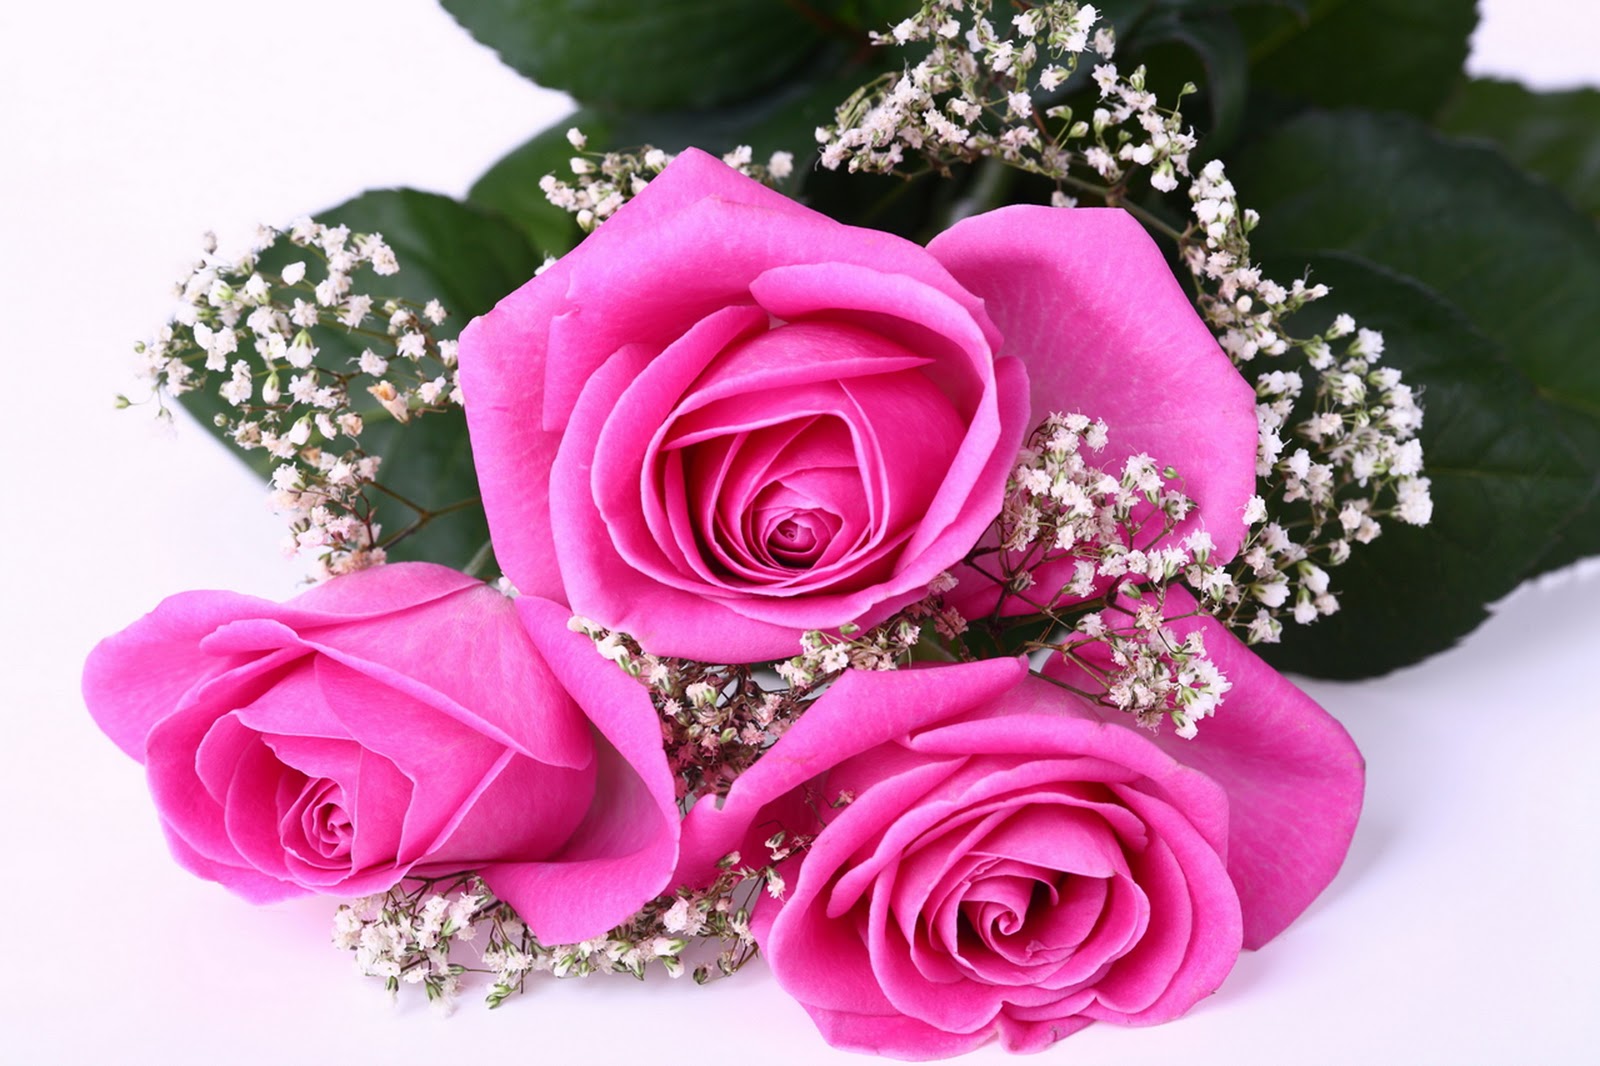 Gambar Bunga Mawar yang Cantik-Cantik